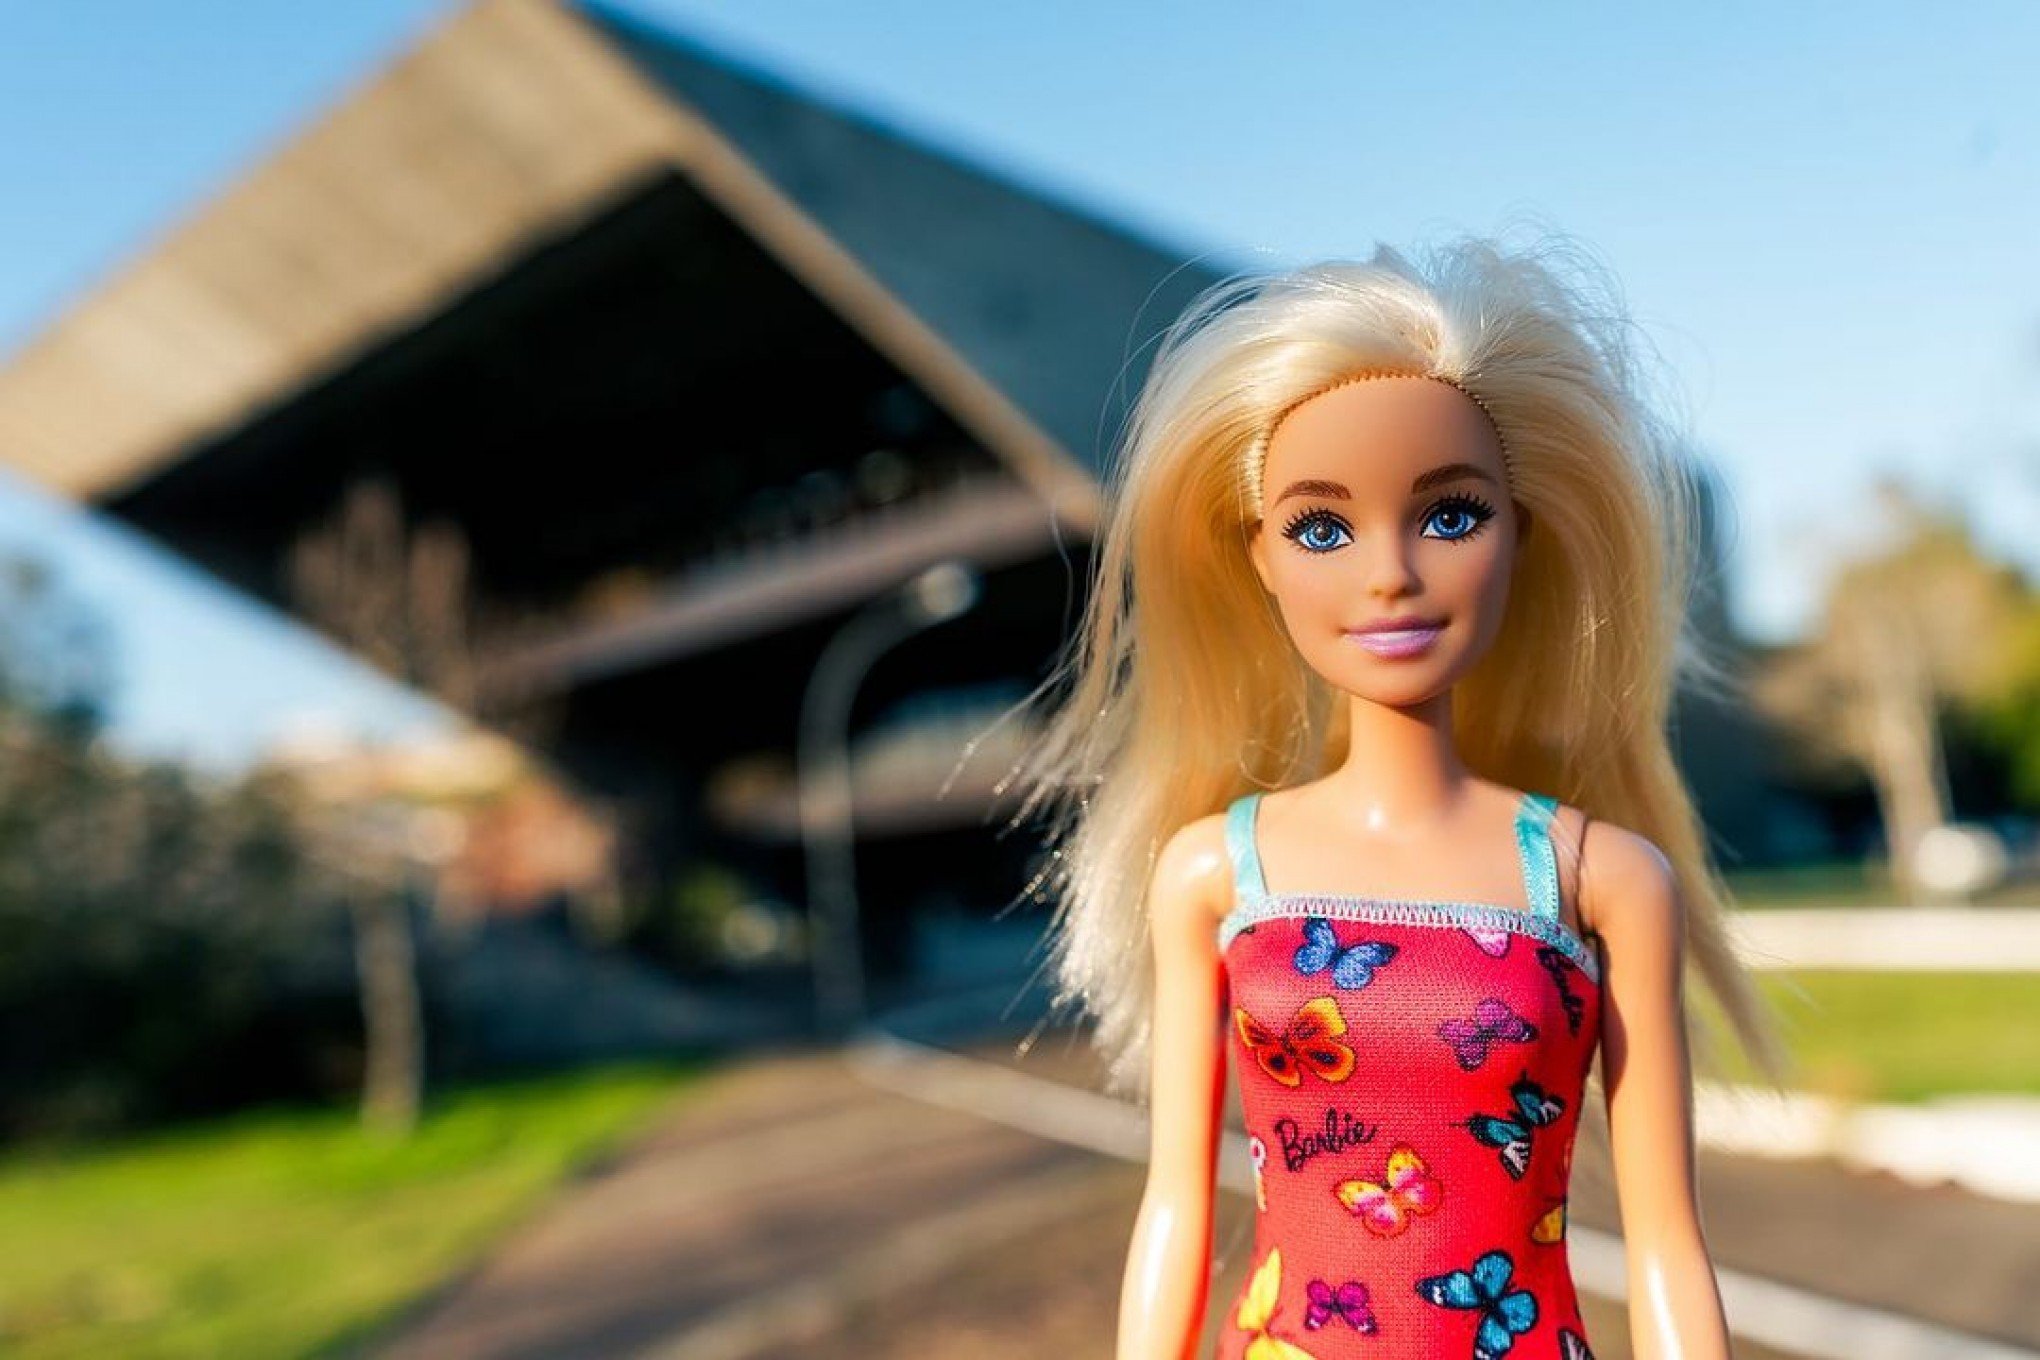 Filmes da Barbie: veja 10 lançamentos e onde assistir online